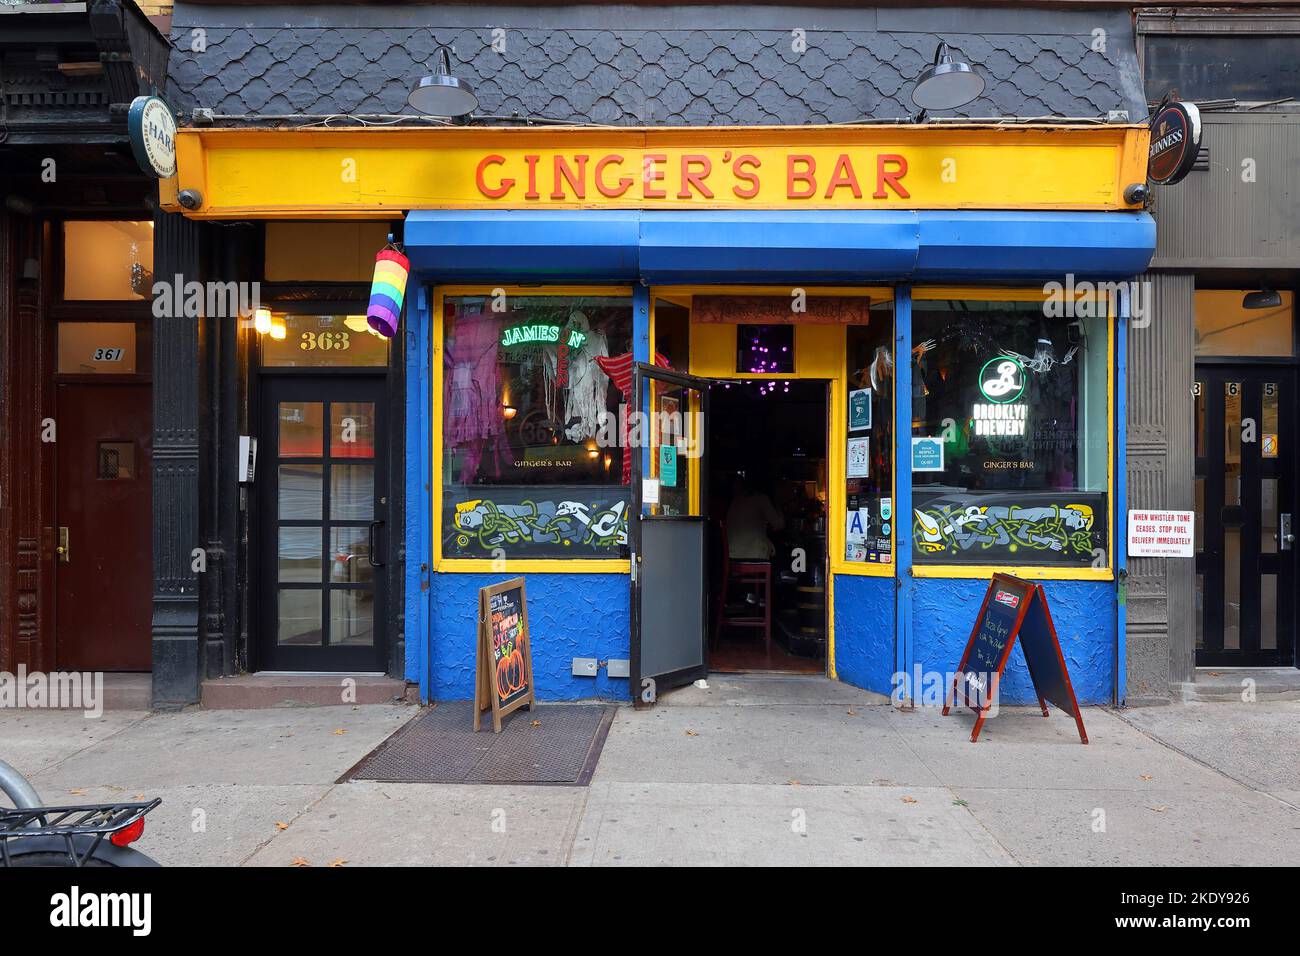 Ginger's Bar, 363 5th Ave, Brooklyn, New York, New York, New York photo d'un bar de quartier accueillant pour les lesbiennes à Park Slope Banque D'Images